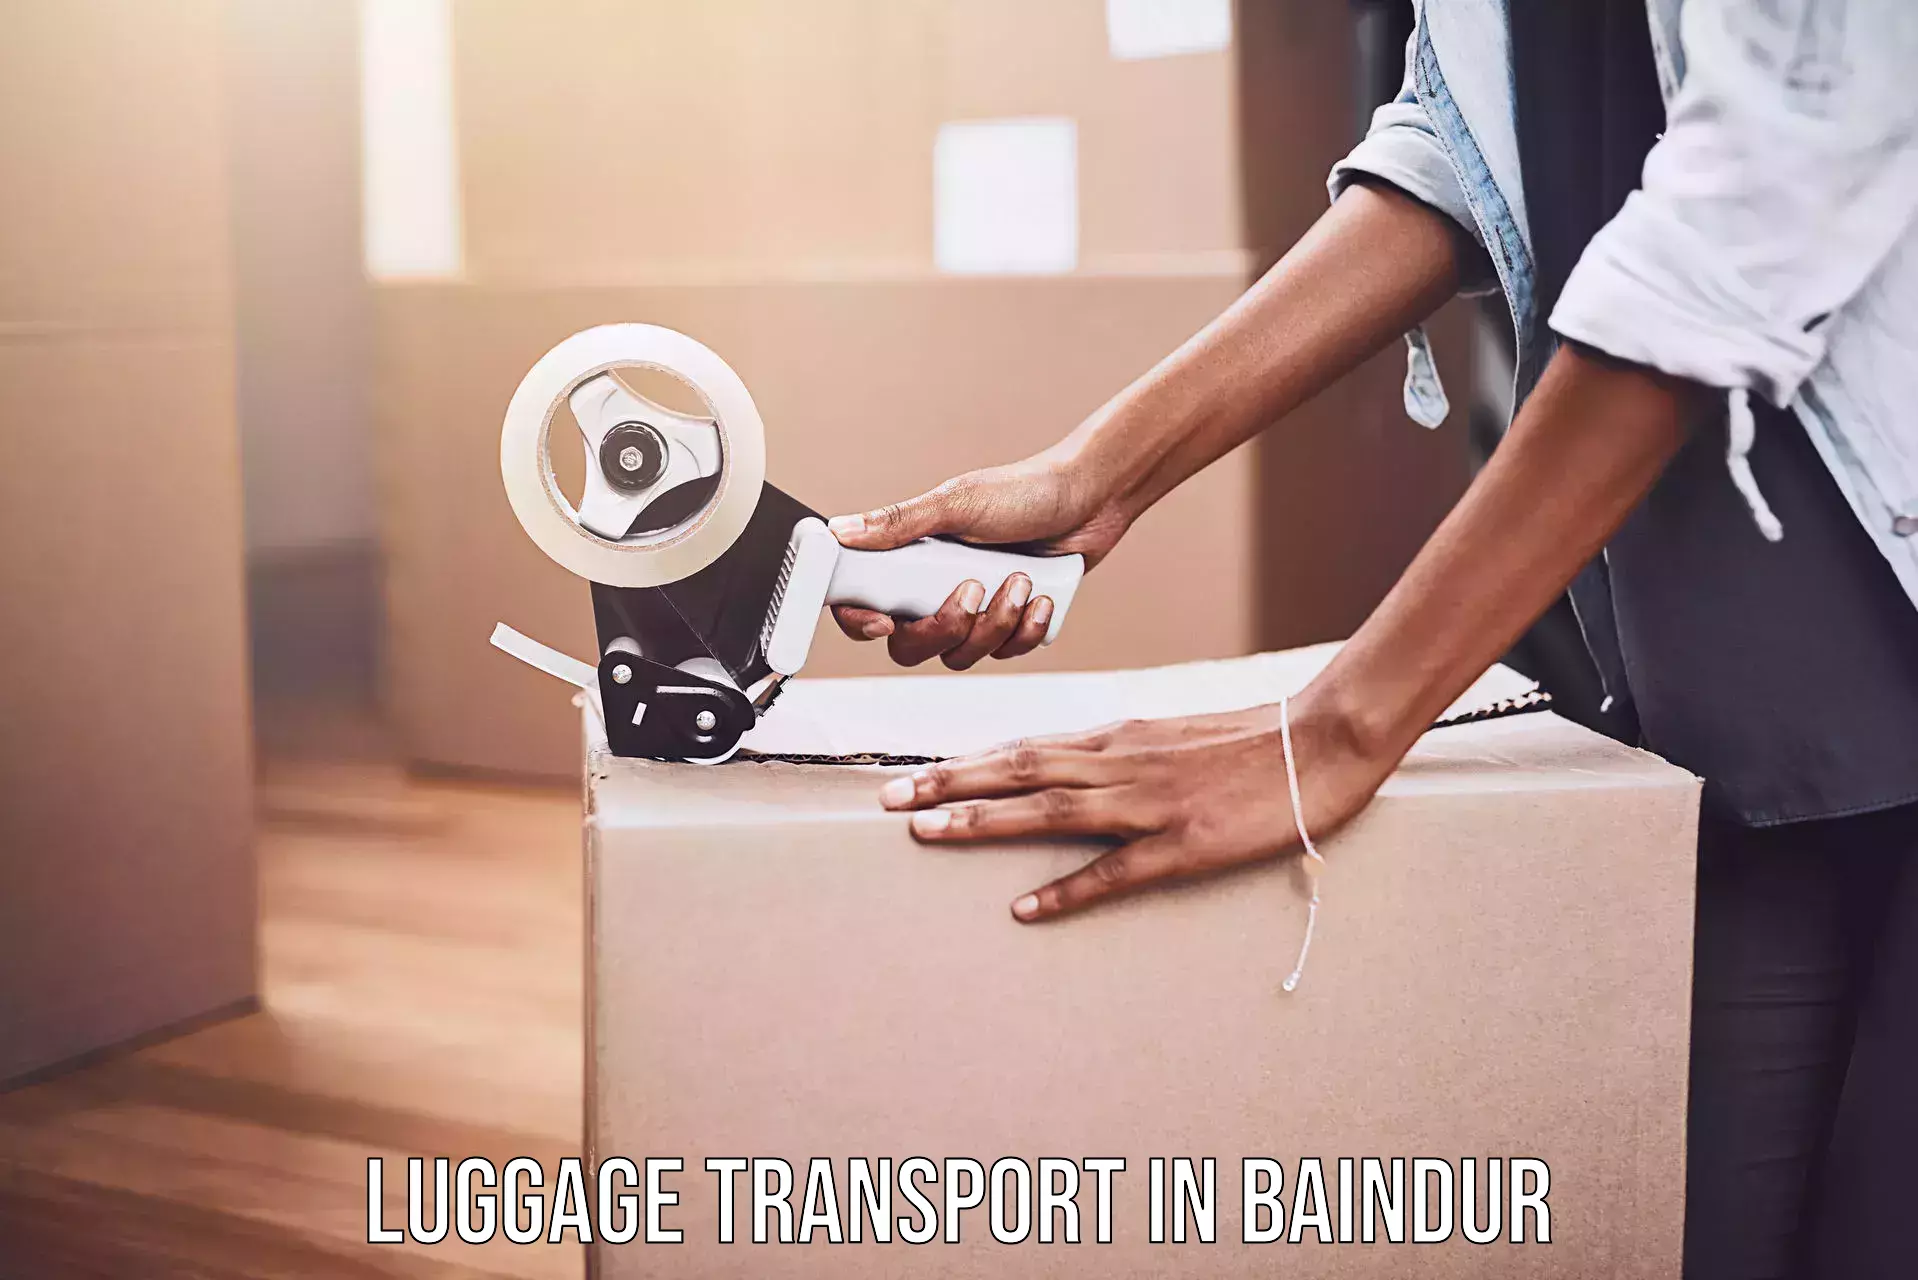 Baggage transport updates in Baindur